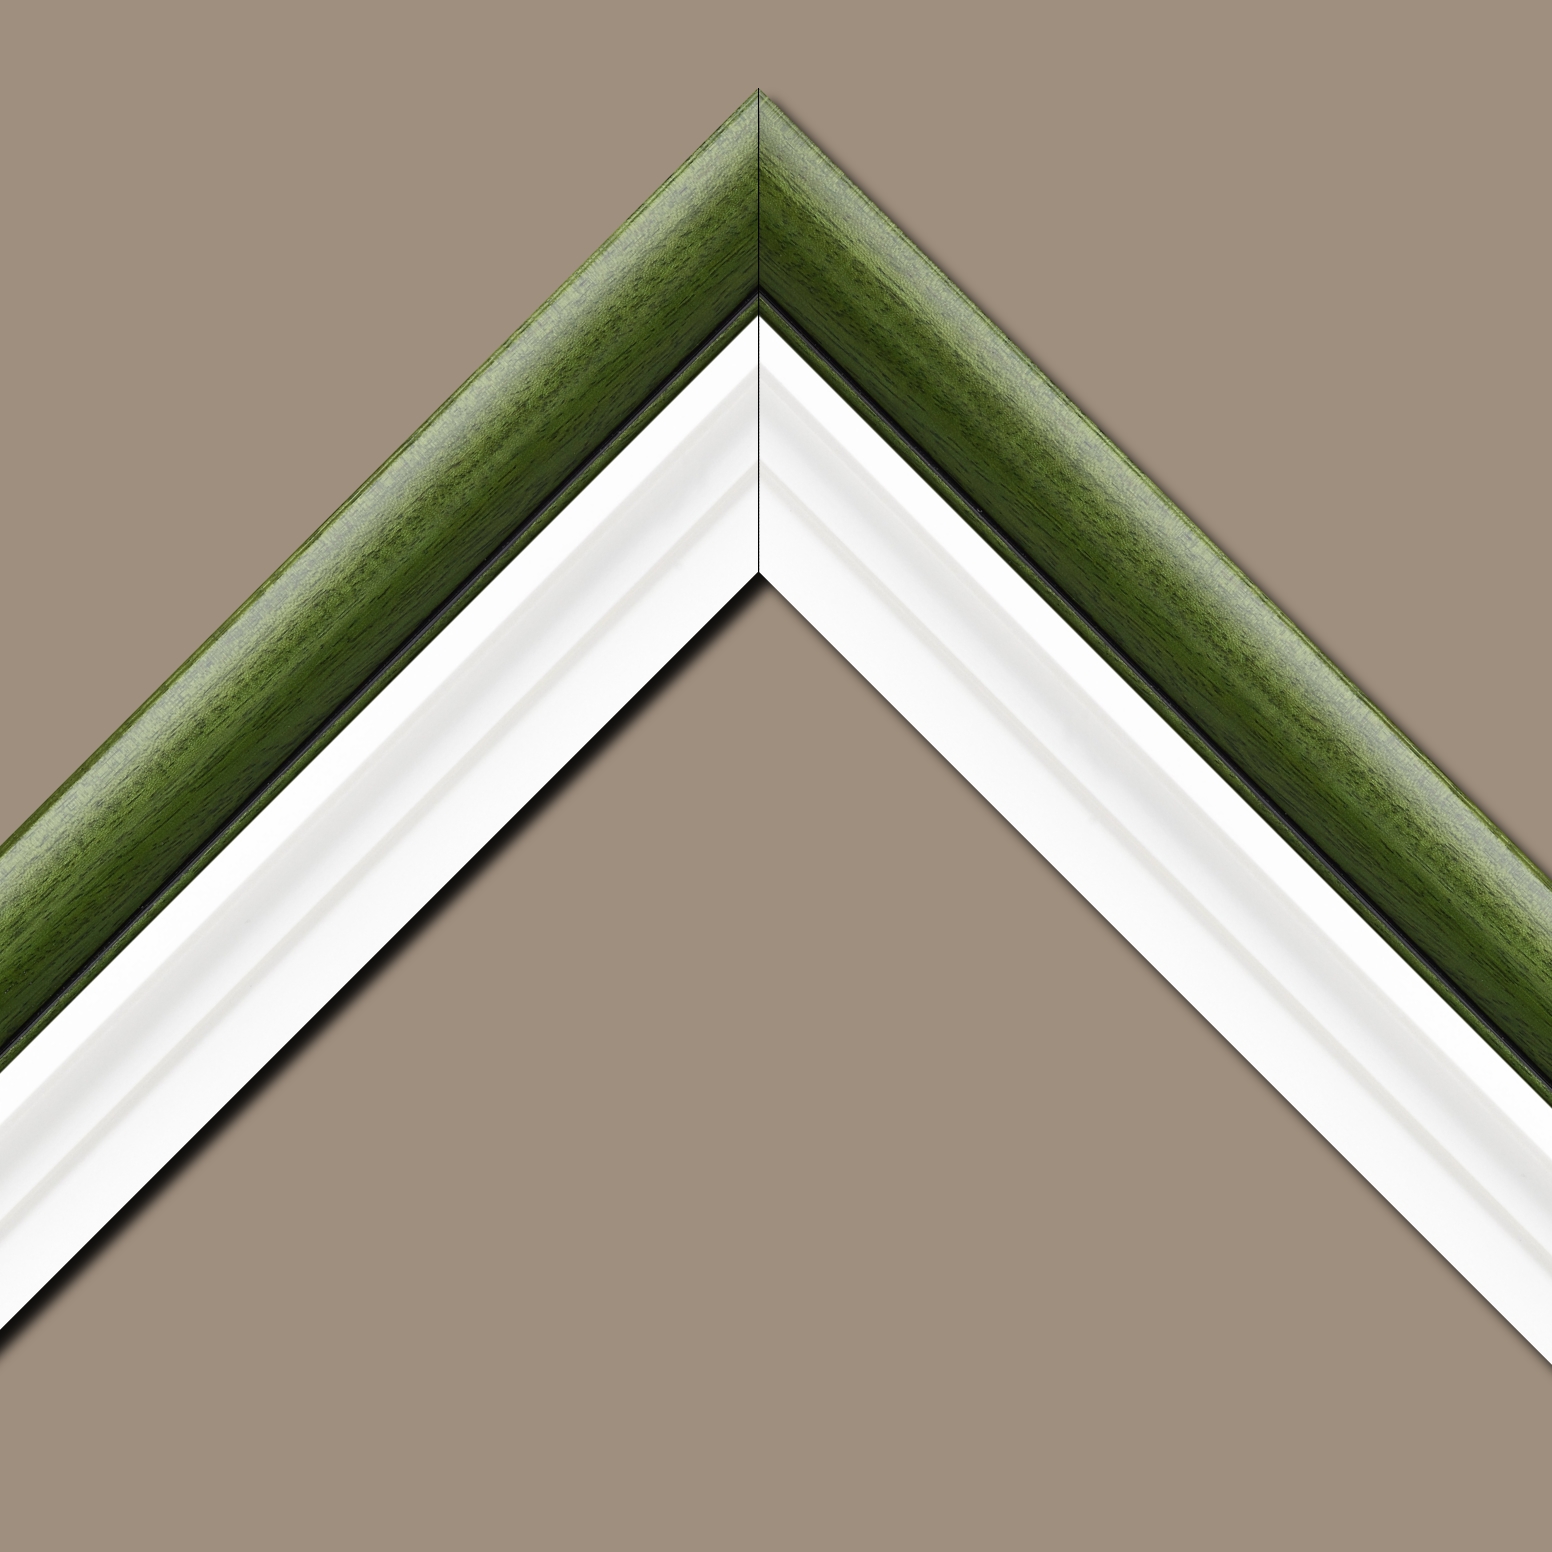 Caisse américaine pour peintures  americaine bois blanc vert — 46 x 38